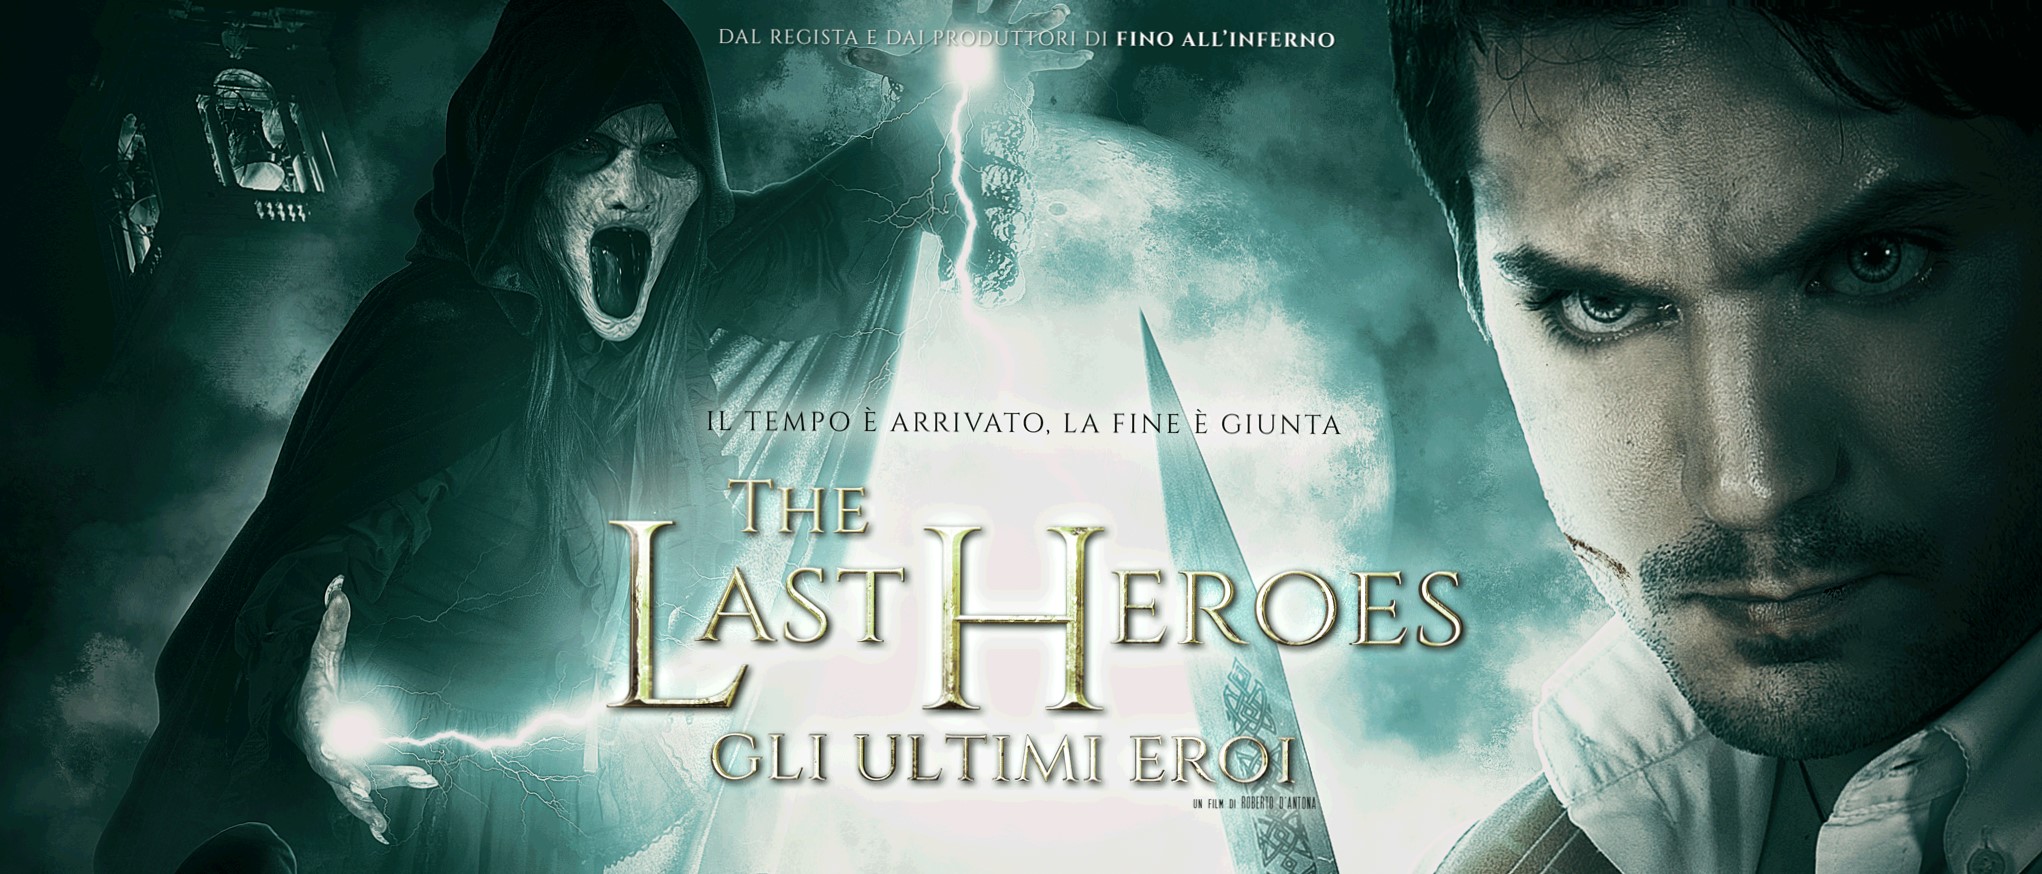 The Last Heroes – Gli Ultimi Eroi: pubblicato il primo trailer del film